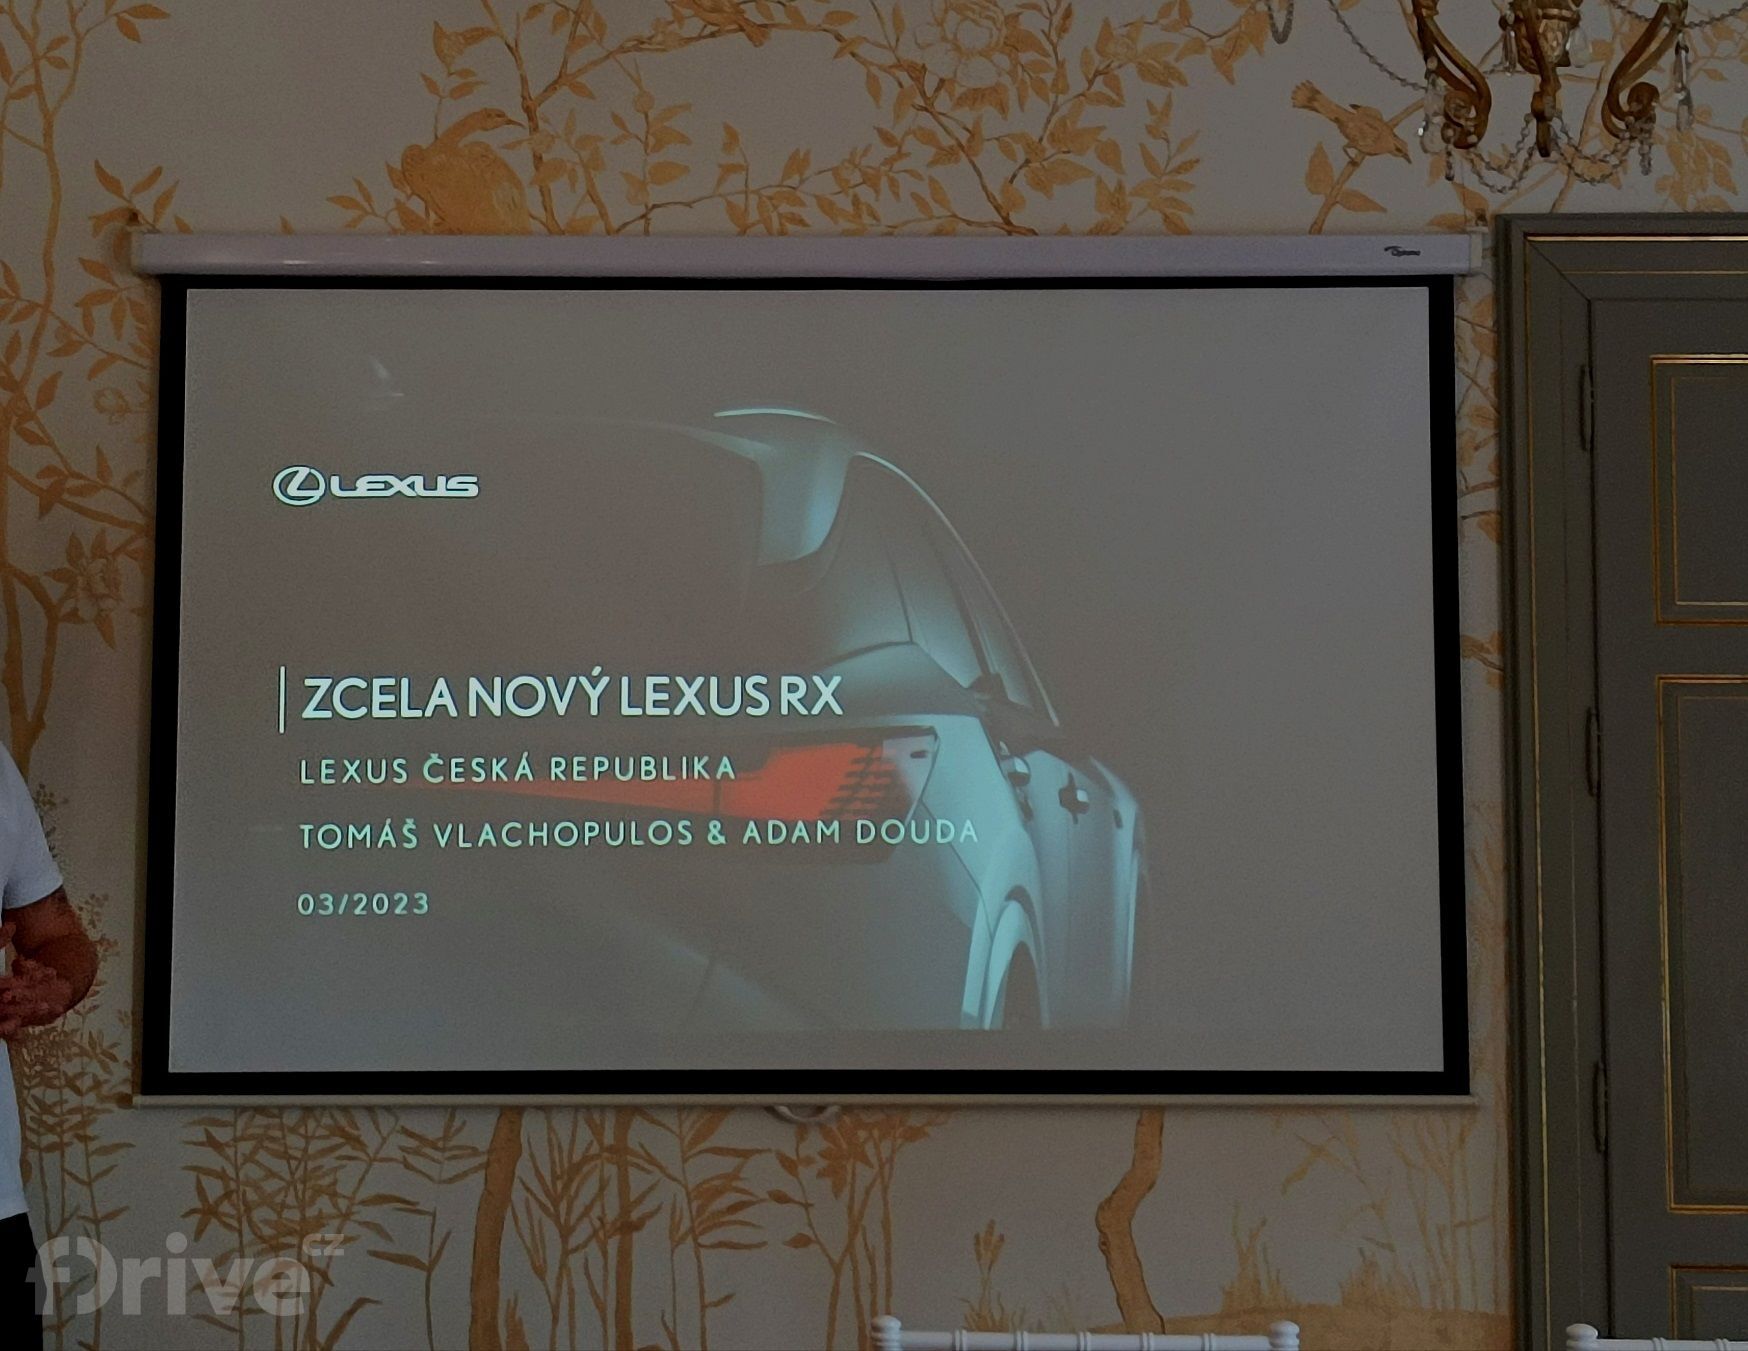 Jízdní dojmy s Lexusem RX 500h